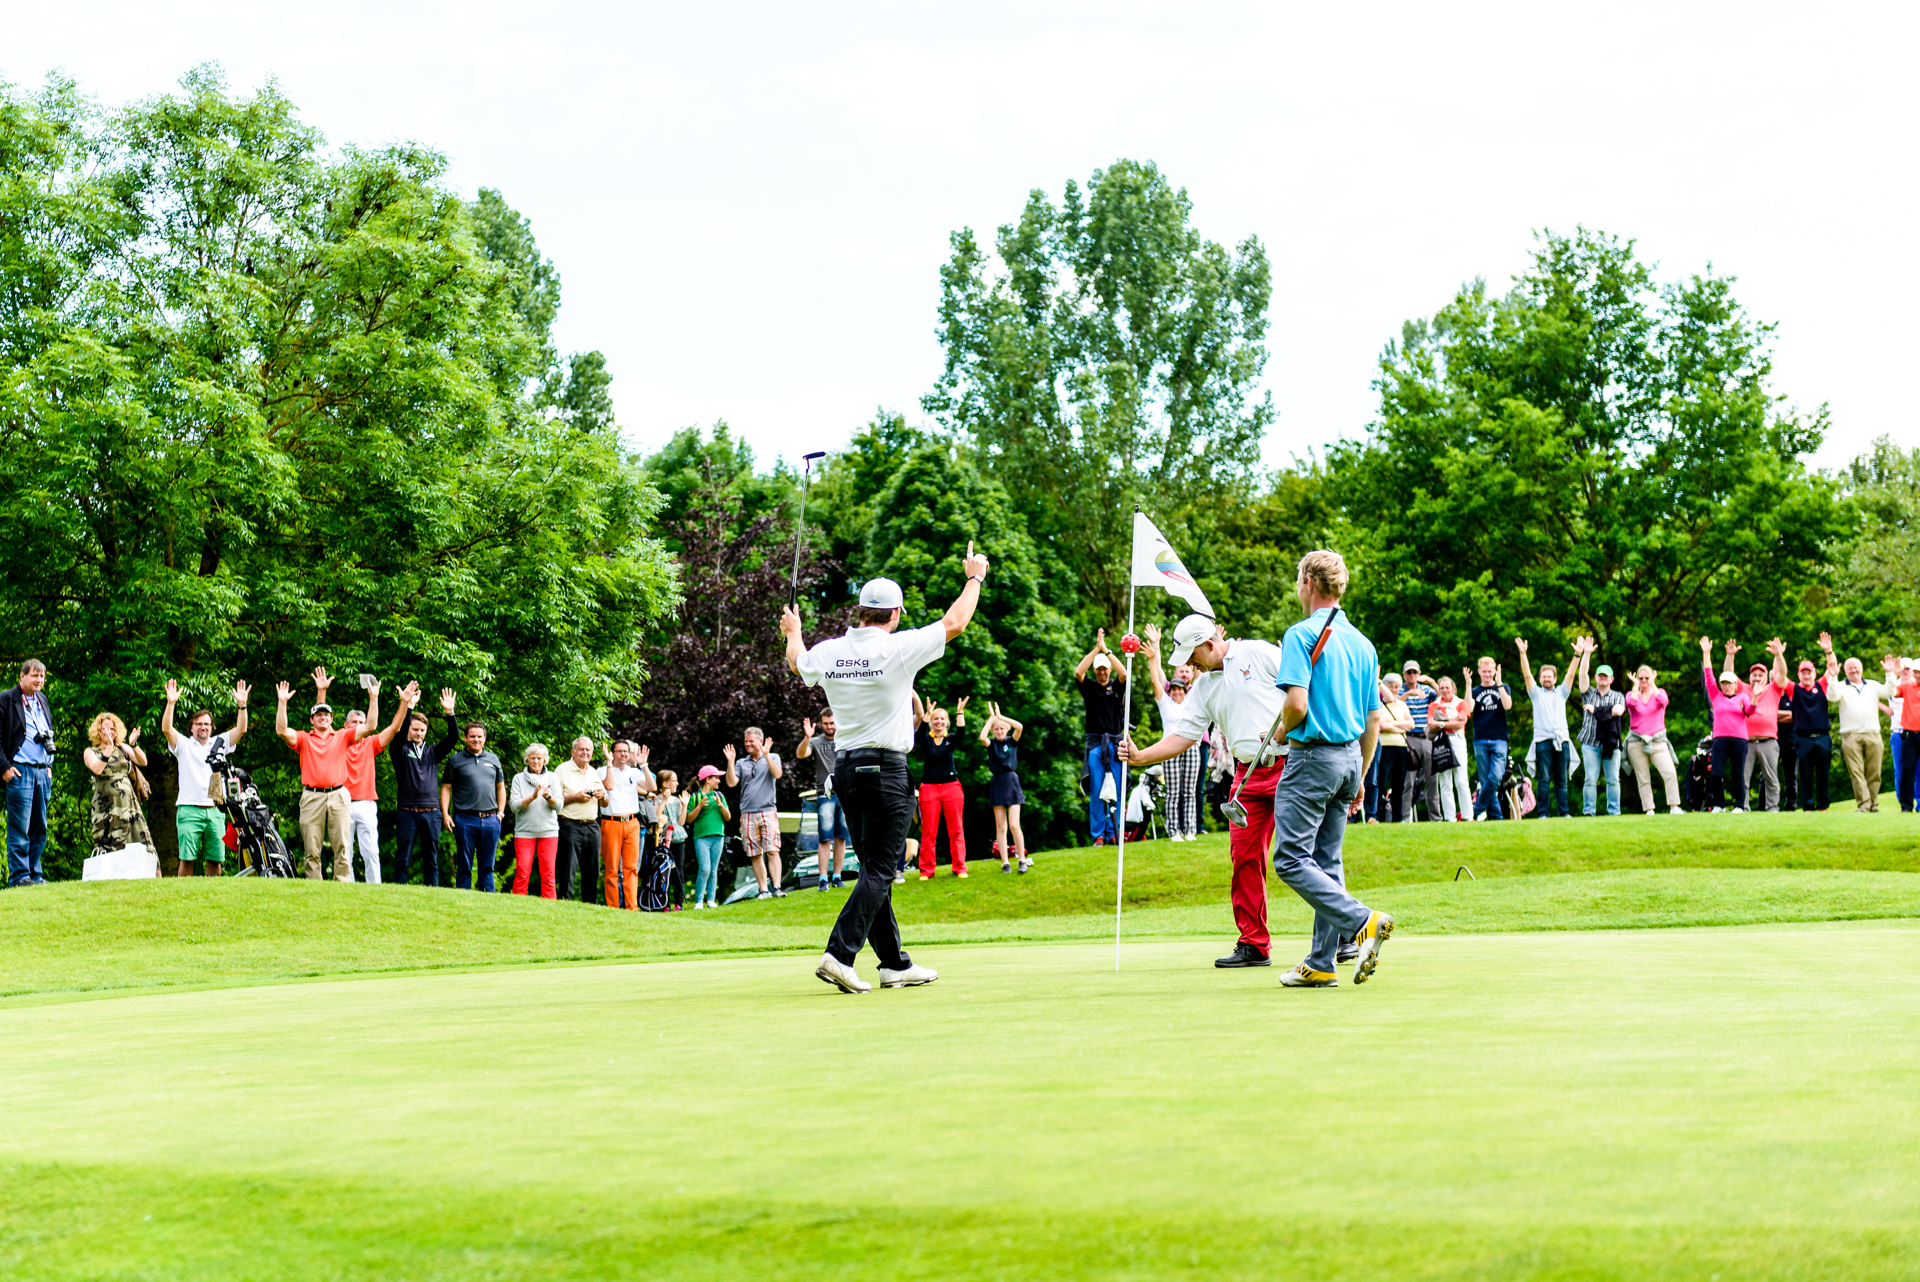 Großes Interesse, viel Applaus: die 10. Deutschen Meisterschaften der Gehörlosen-Golfer im Golfpark München-Aschheim hatten ihr Publikum.